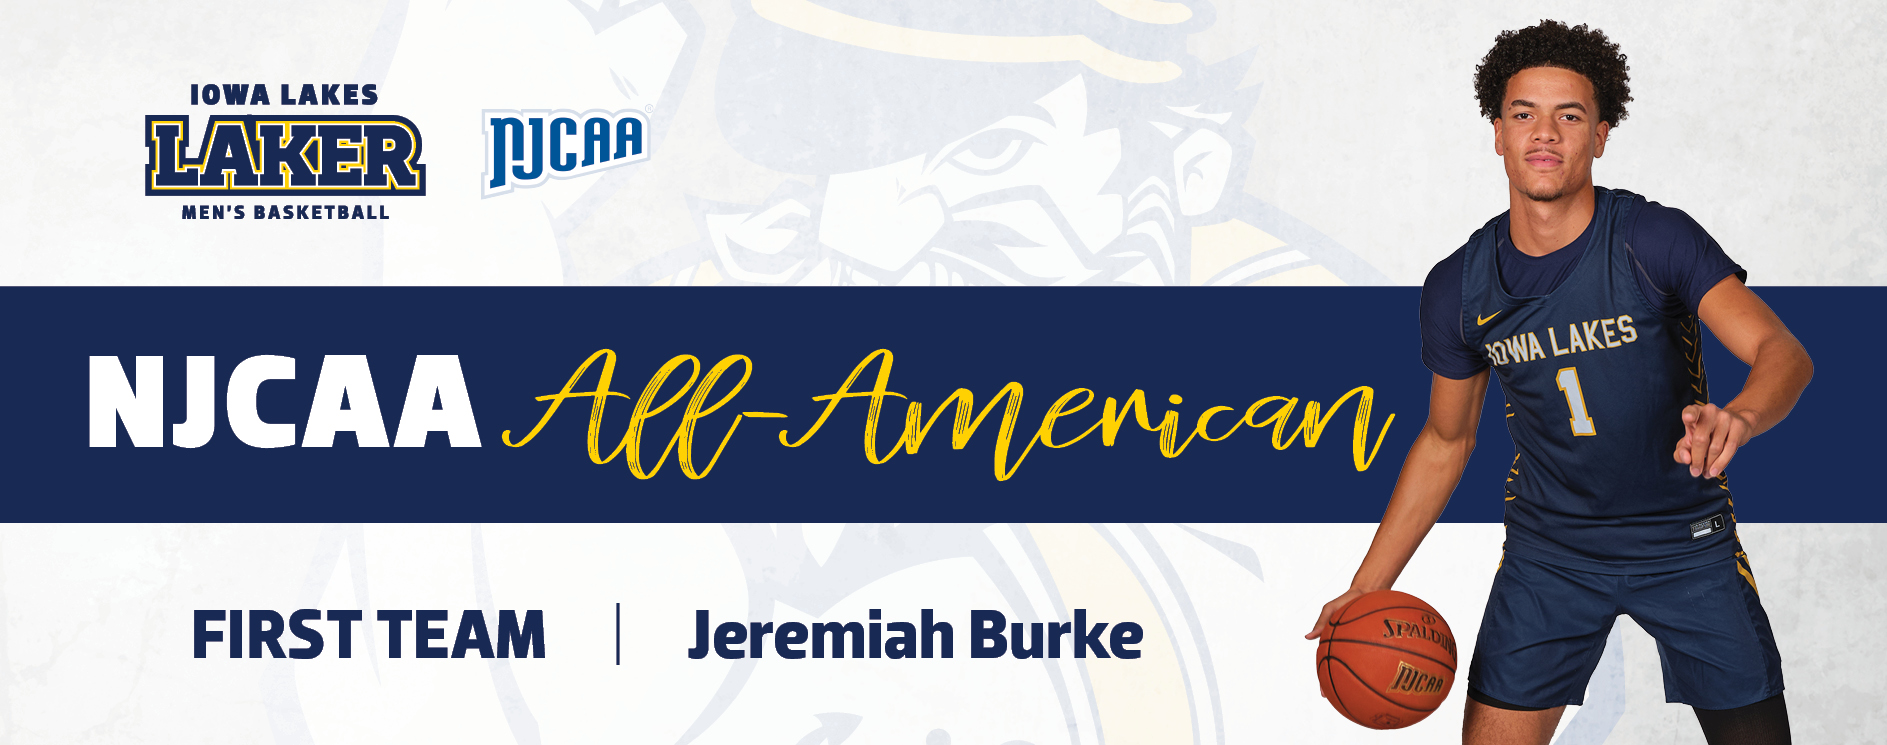 Iowa Lakes Burke Named an NJCAA All-American